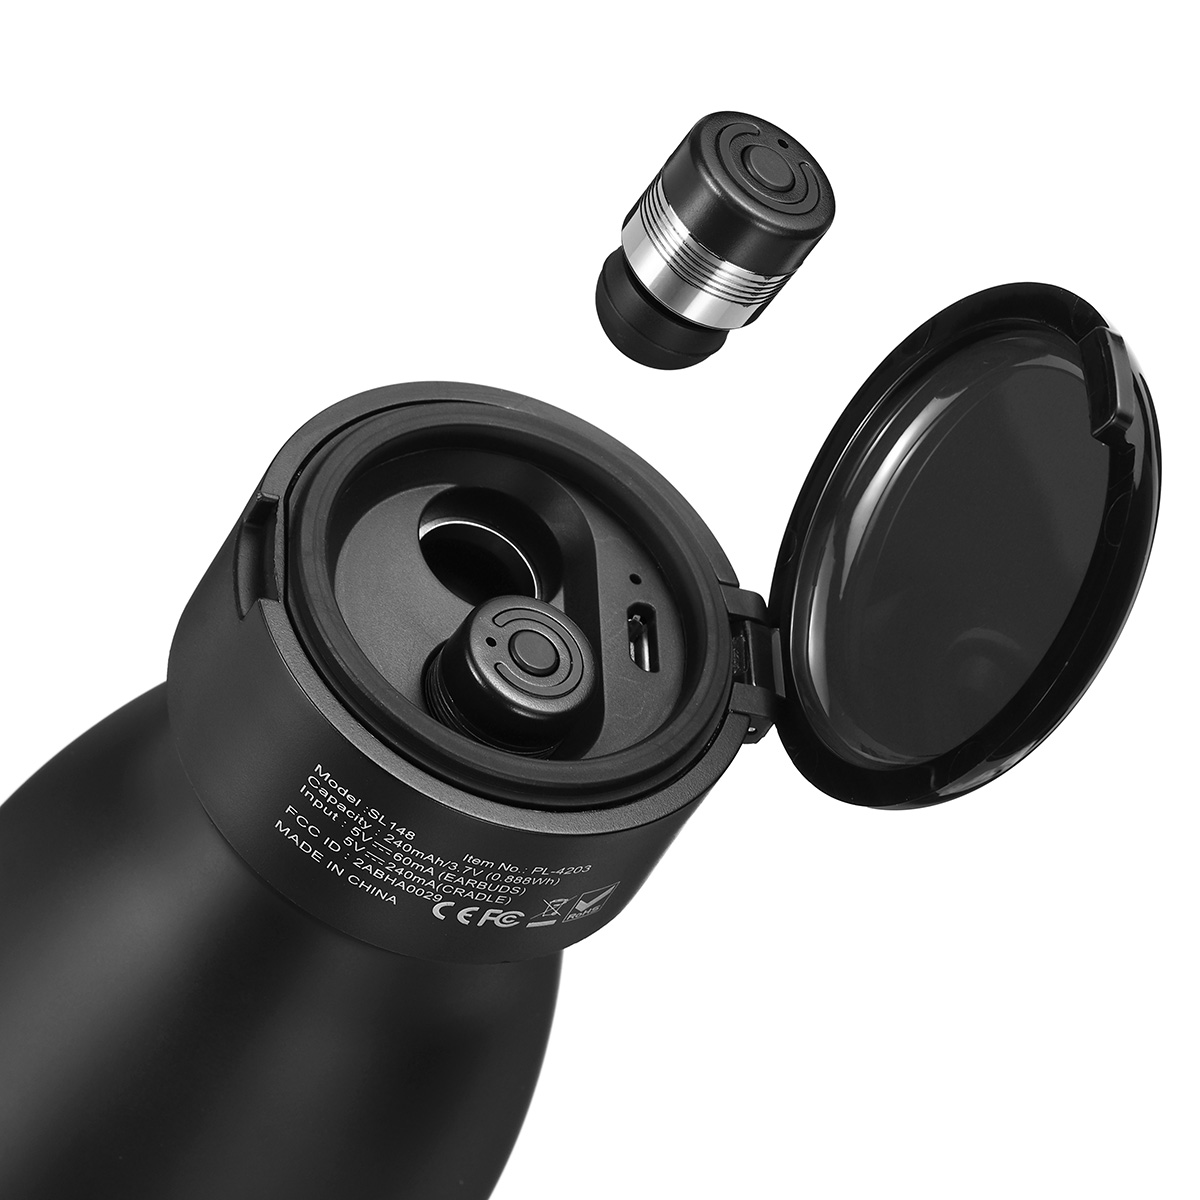 2 em 1 Bluetooth 5.0 580 ml garrafa de água TWS fone de ouvido à prova d 'água verdadeiro fone de ouvido estéreo sem fio com microfone